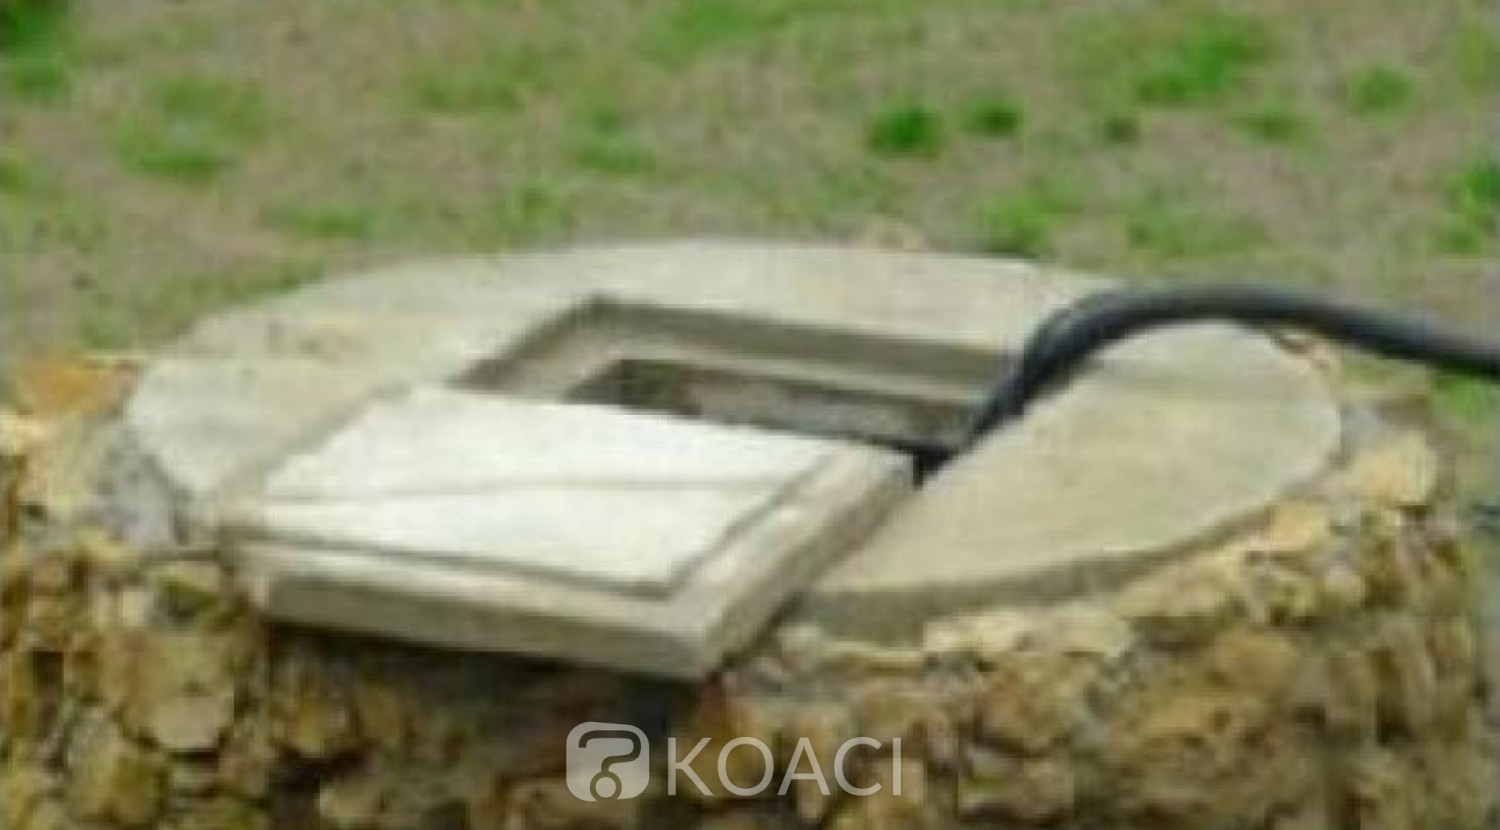 Côte d'Ivoire: « Ivre », un homme se retrouve dans un puits fermé à l'aide d'une porte métallique